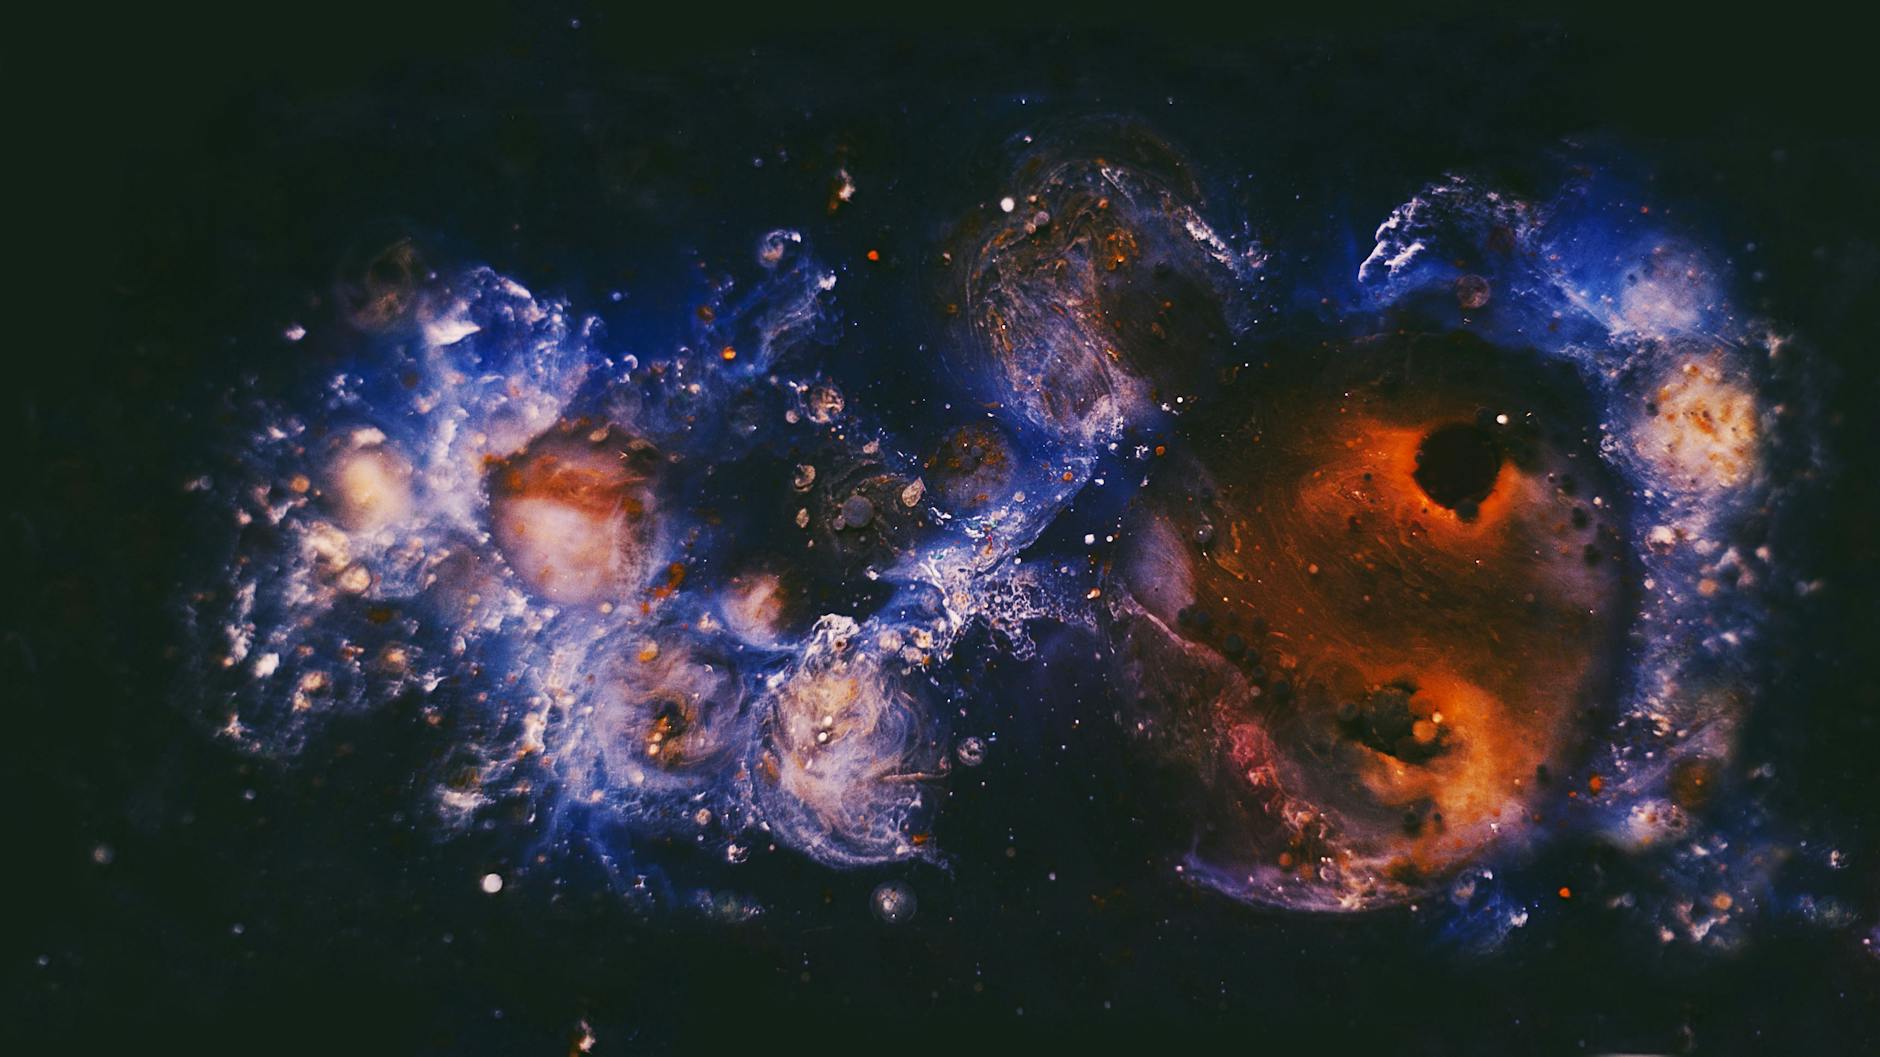 Звёздное небо и космос в картинках - Страница 20 Pexels-photo-2694037